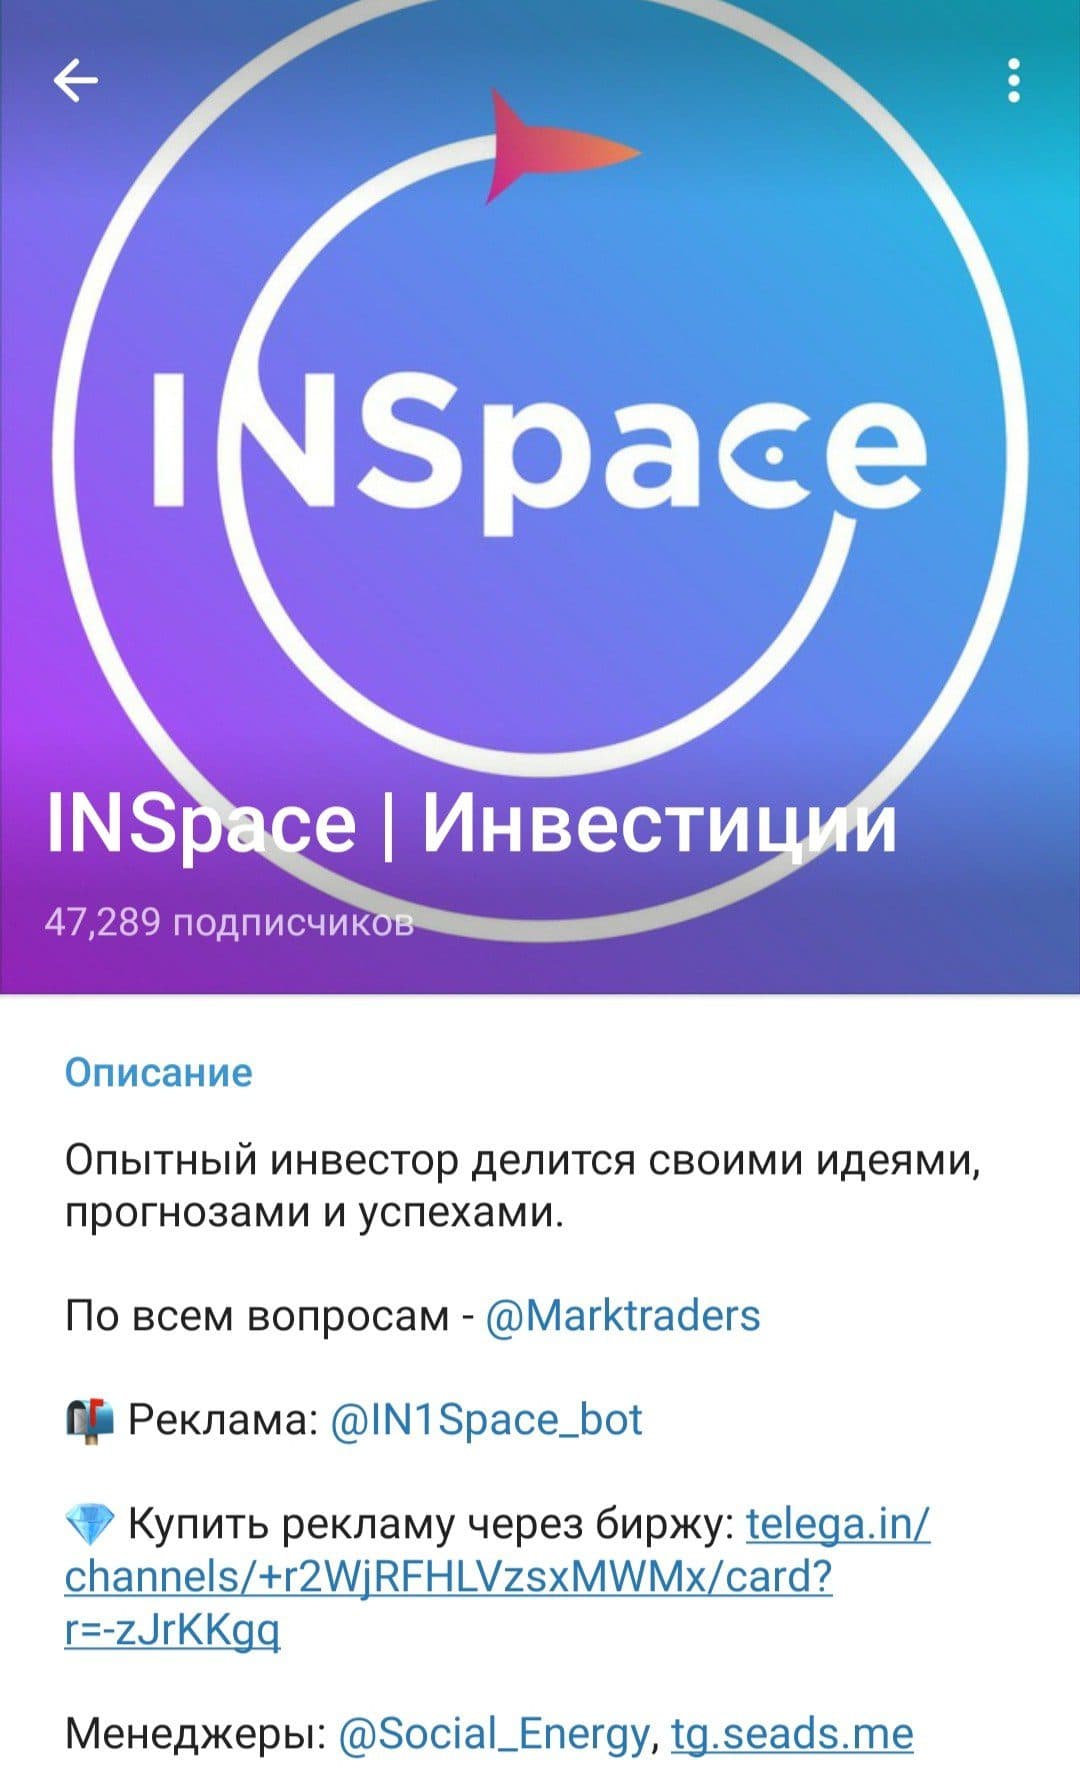 INSpace Инвестиции телеграм